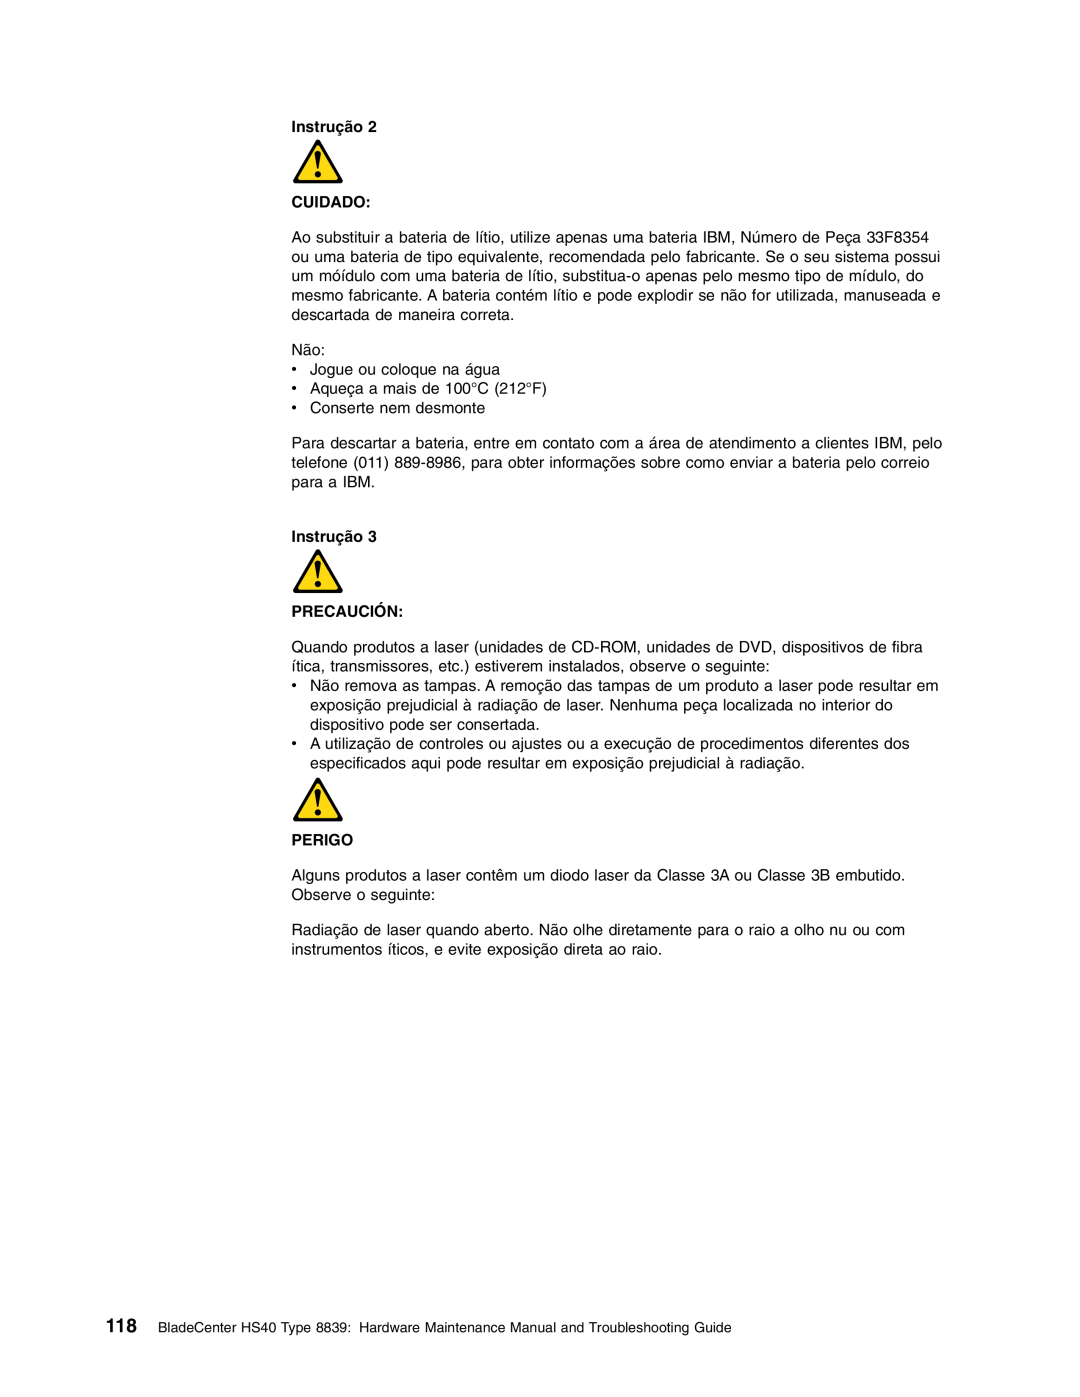 IBM HS40 manual Instrução CUIDADO, Instrução PRECAUCIÓN, Perigo 